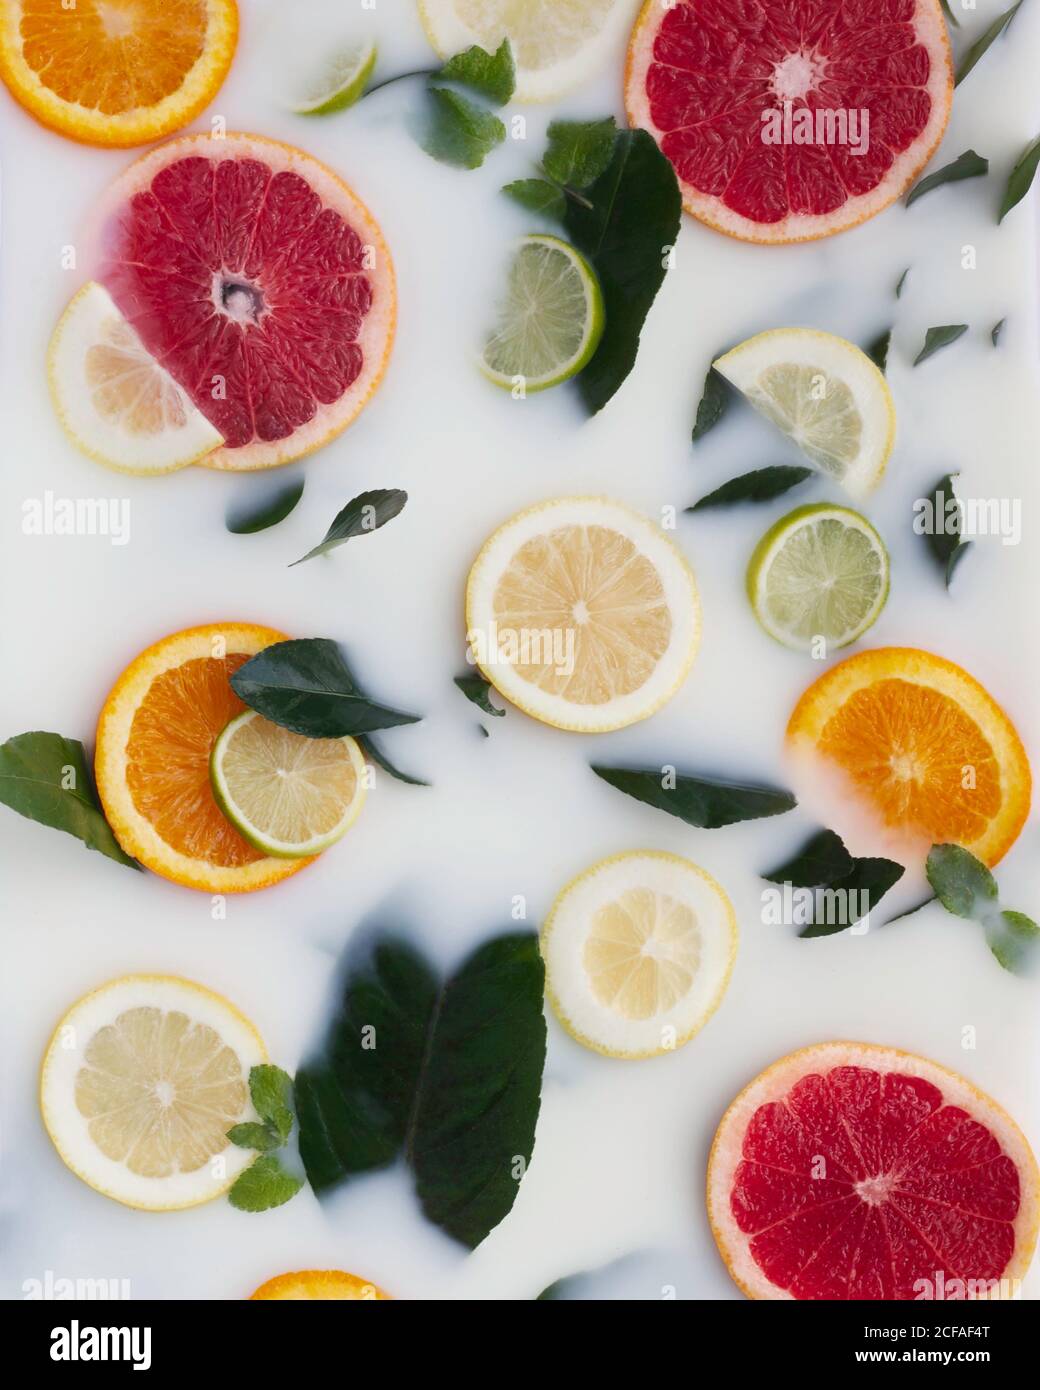 Vista dall'alto di colorati segmenti di pompelmo di lime arancio decorata con foglie verdi e tubi in plastica in liquido bianco Foto Stock